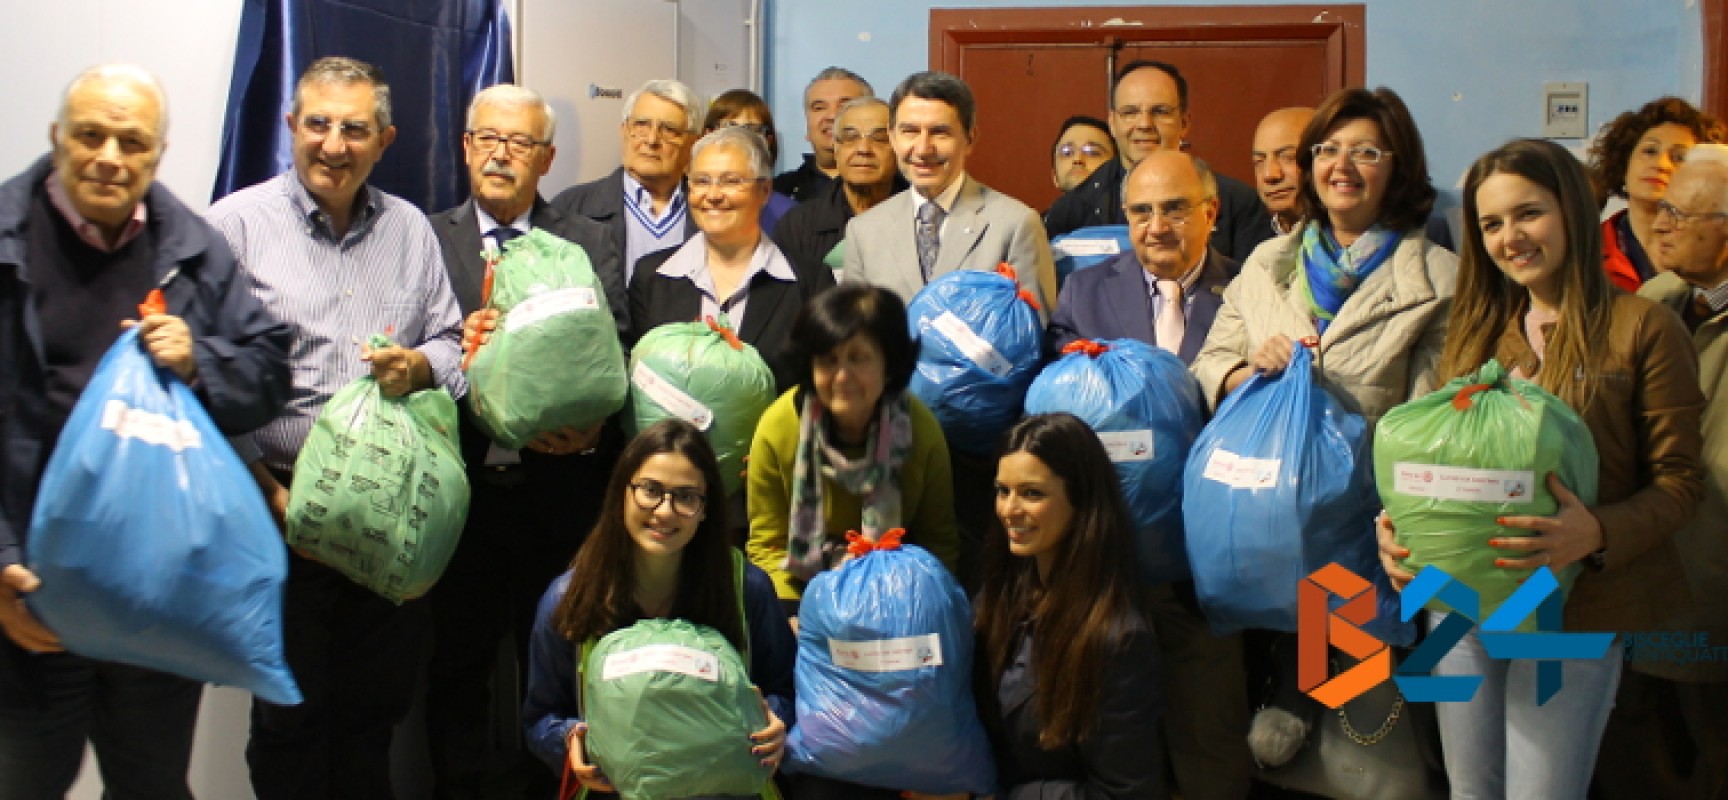 Rotary Club, consegnata la nuova cella frigorifera alla Caritas biscegliese / FOTO